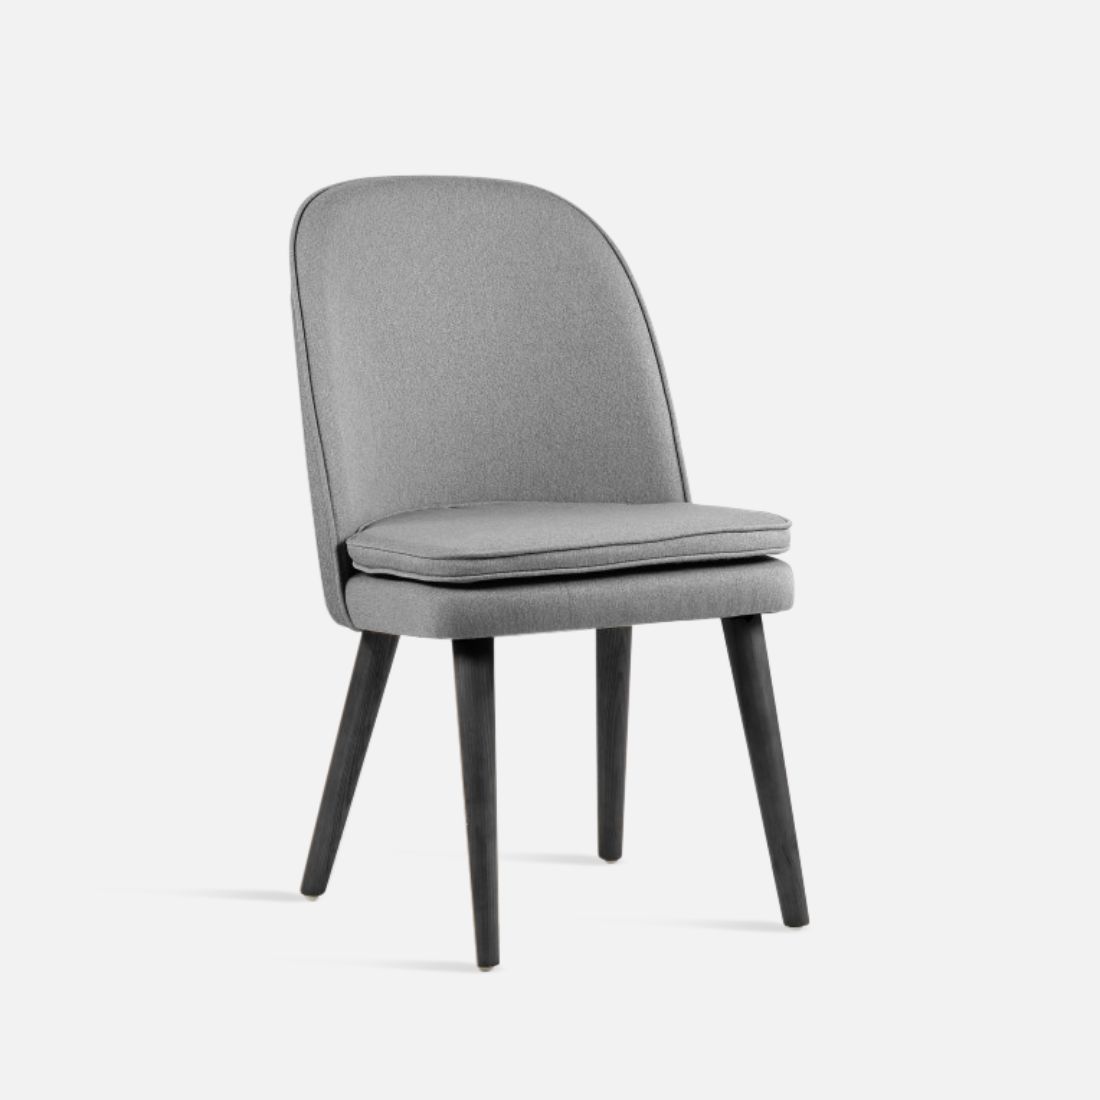 JC Armless Chair, W52, Black Legs